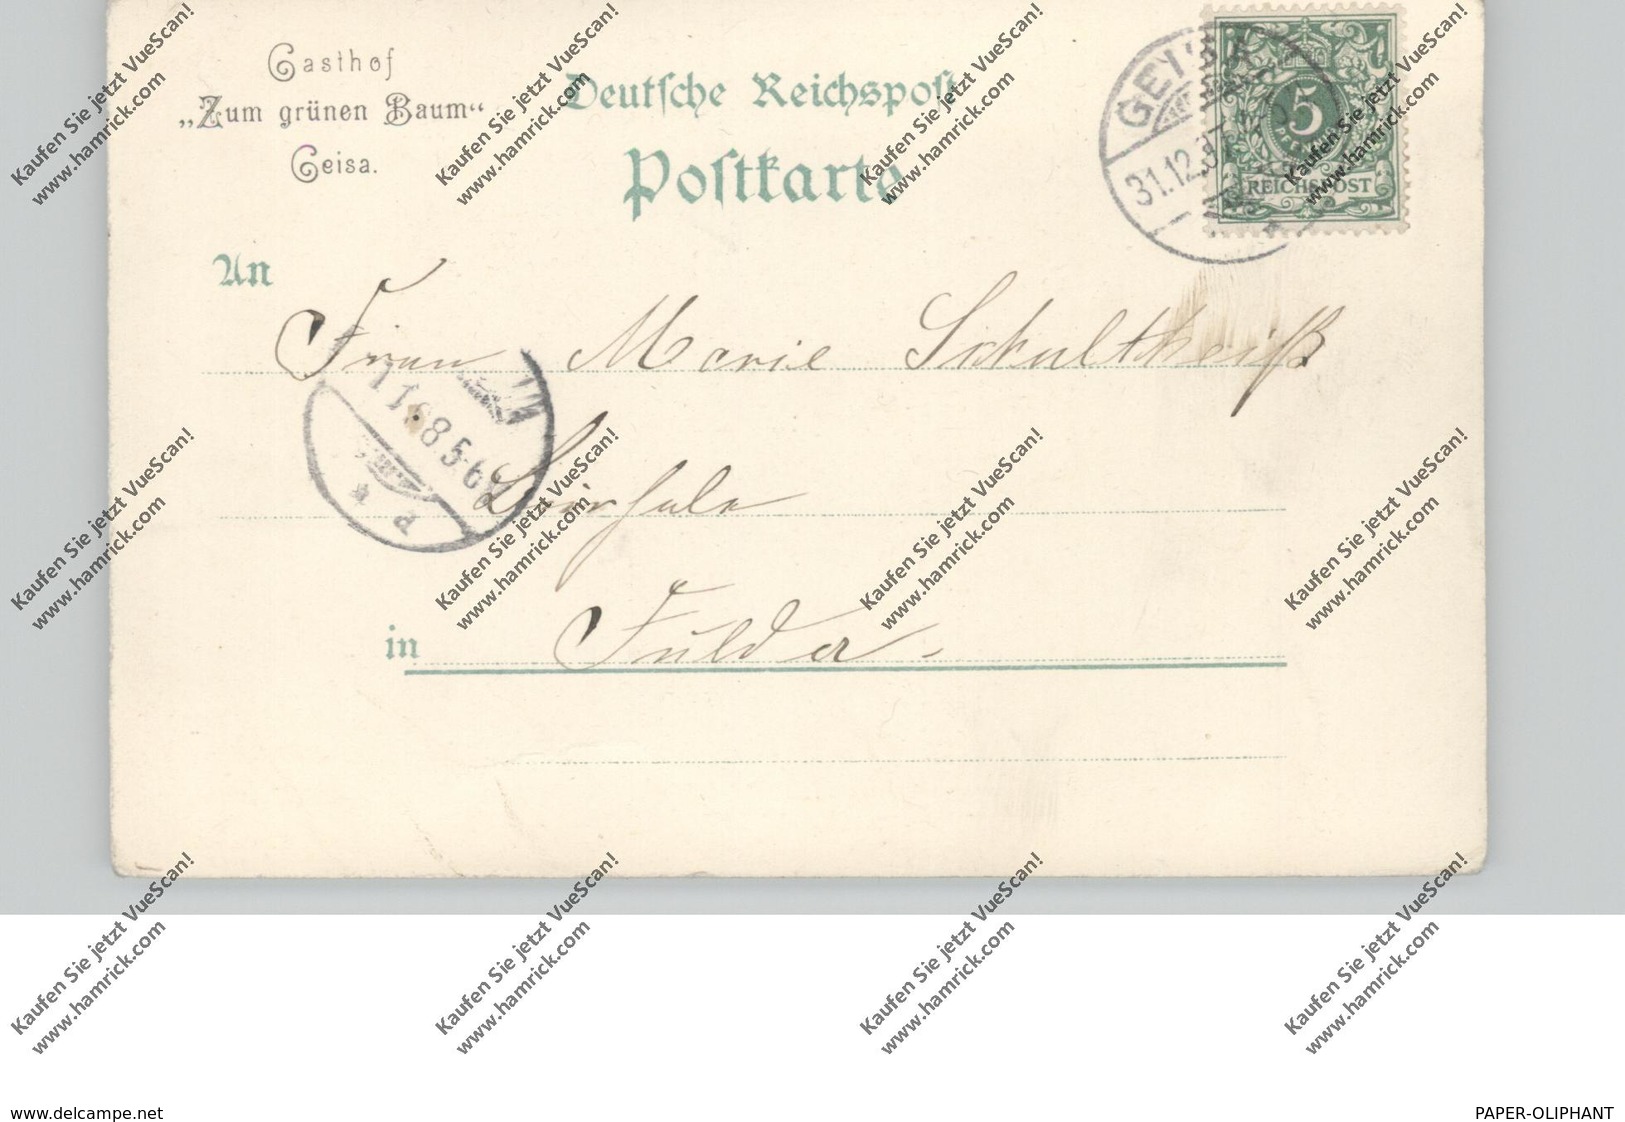 0-6222 GEISA, Lithographie 1897, Rathaus, Rechnungsamt, Amtsgericht, Gesamtansicht - Bad Salzungen